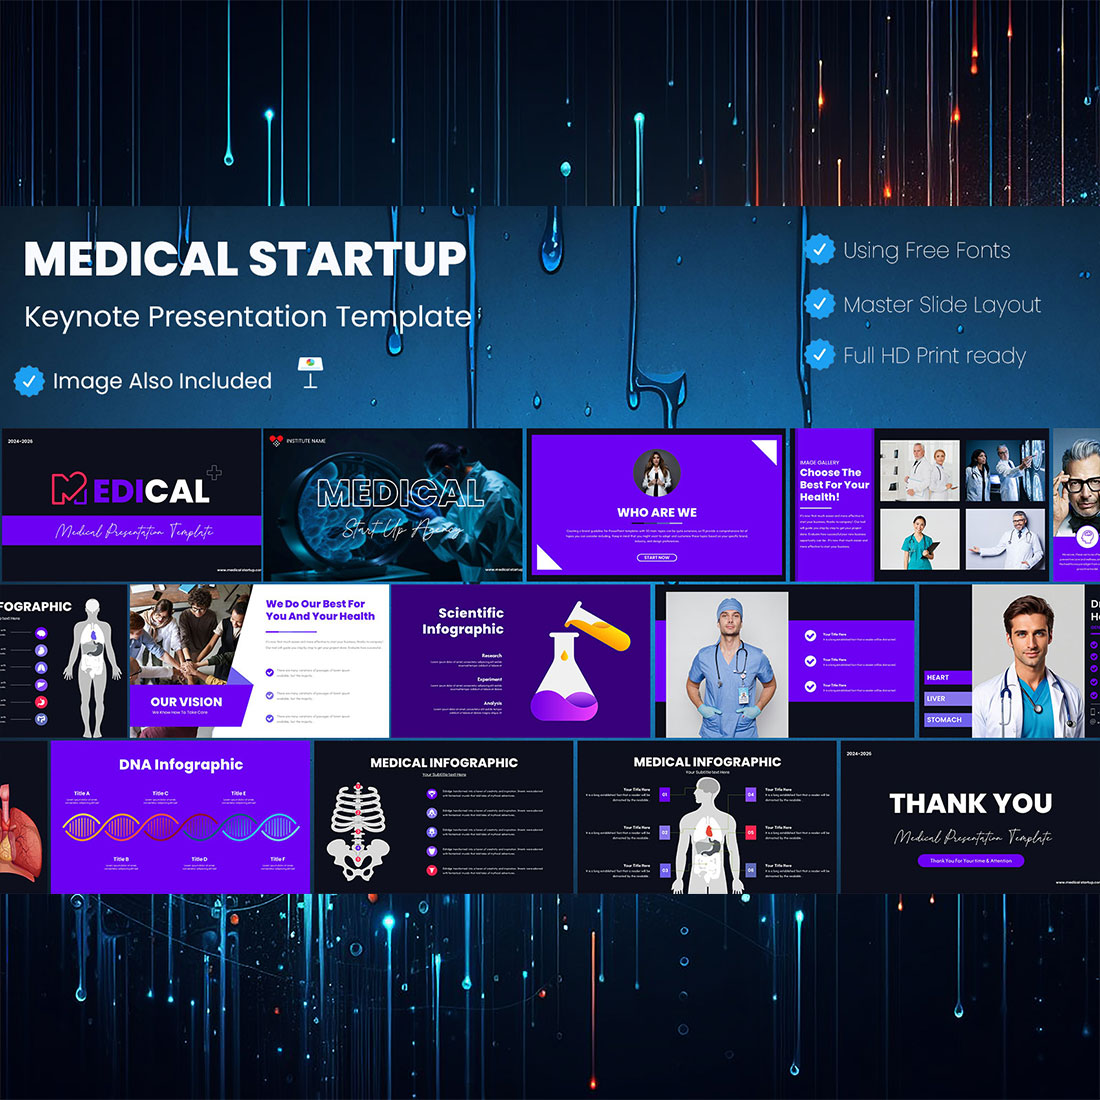 Medical Start-up Keynote Presentation Template cover image.